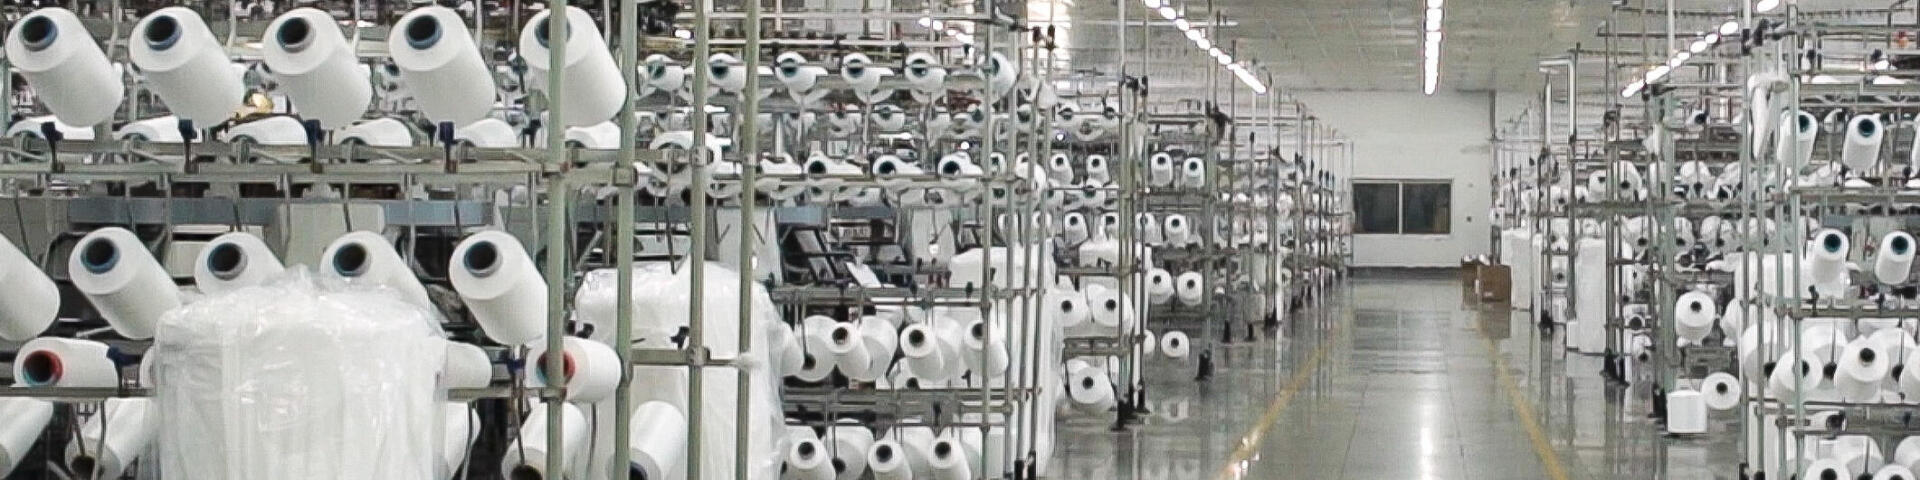 Photo de bobines de fils blancs en entrepôt